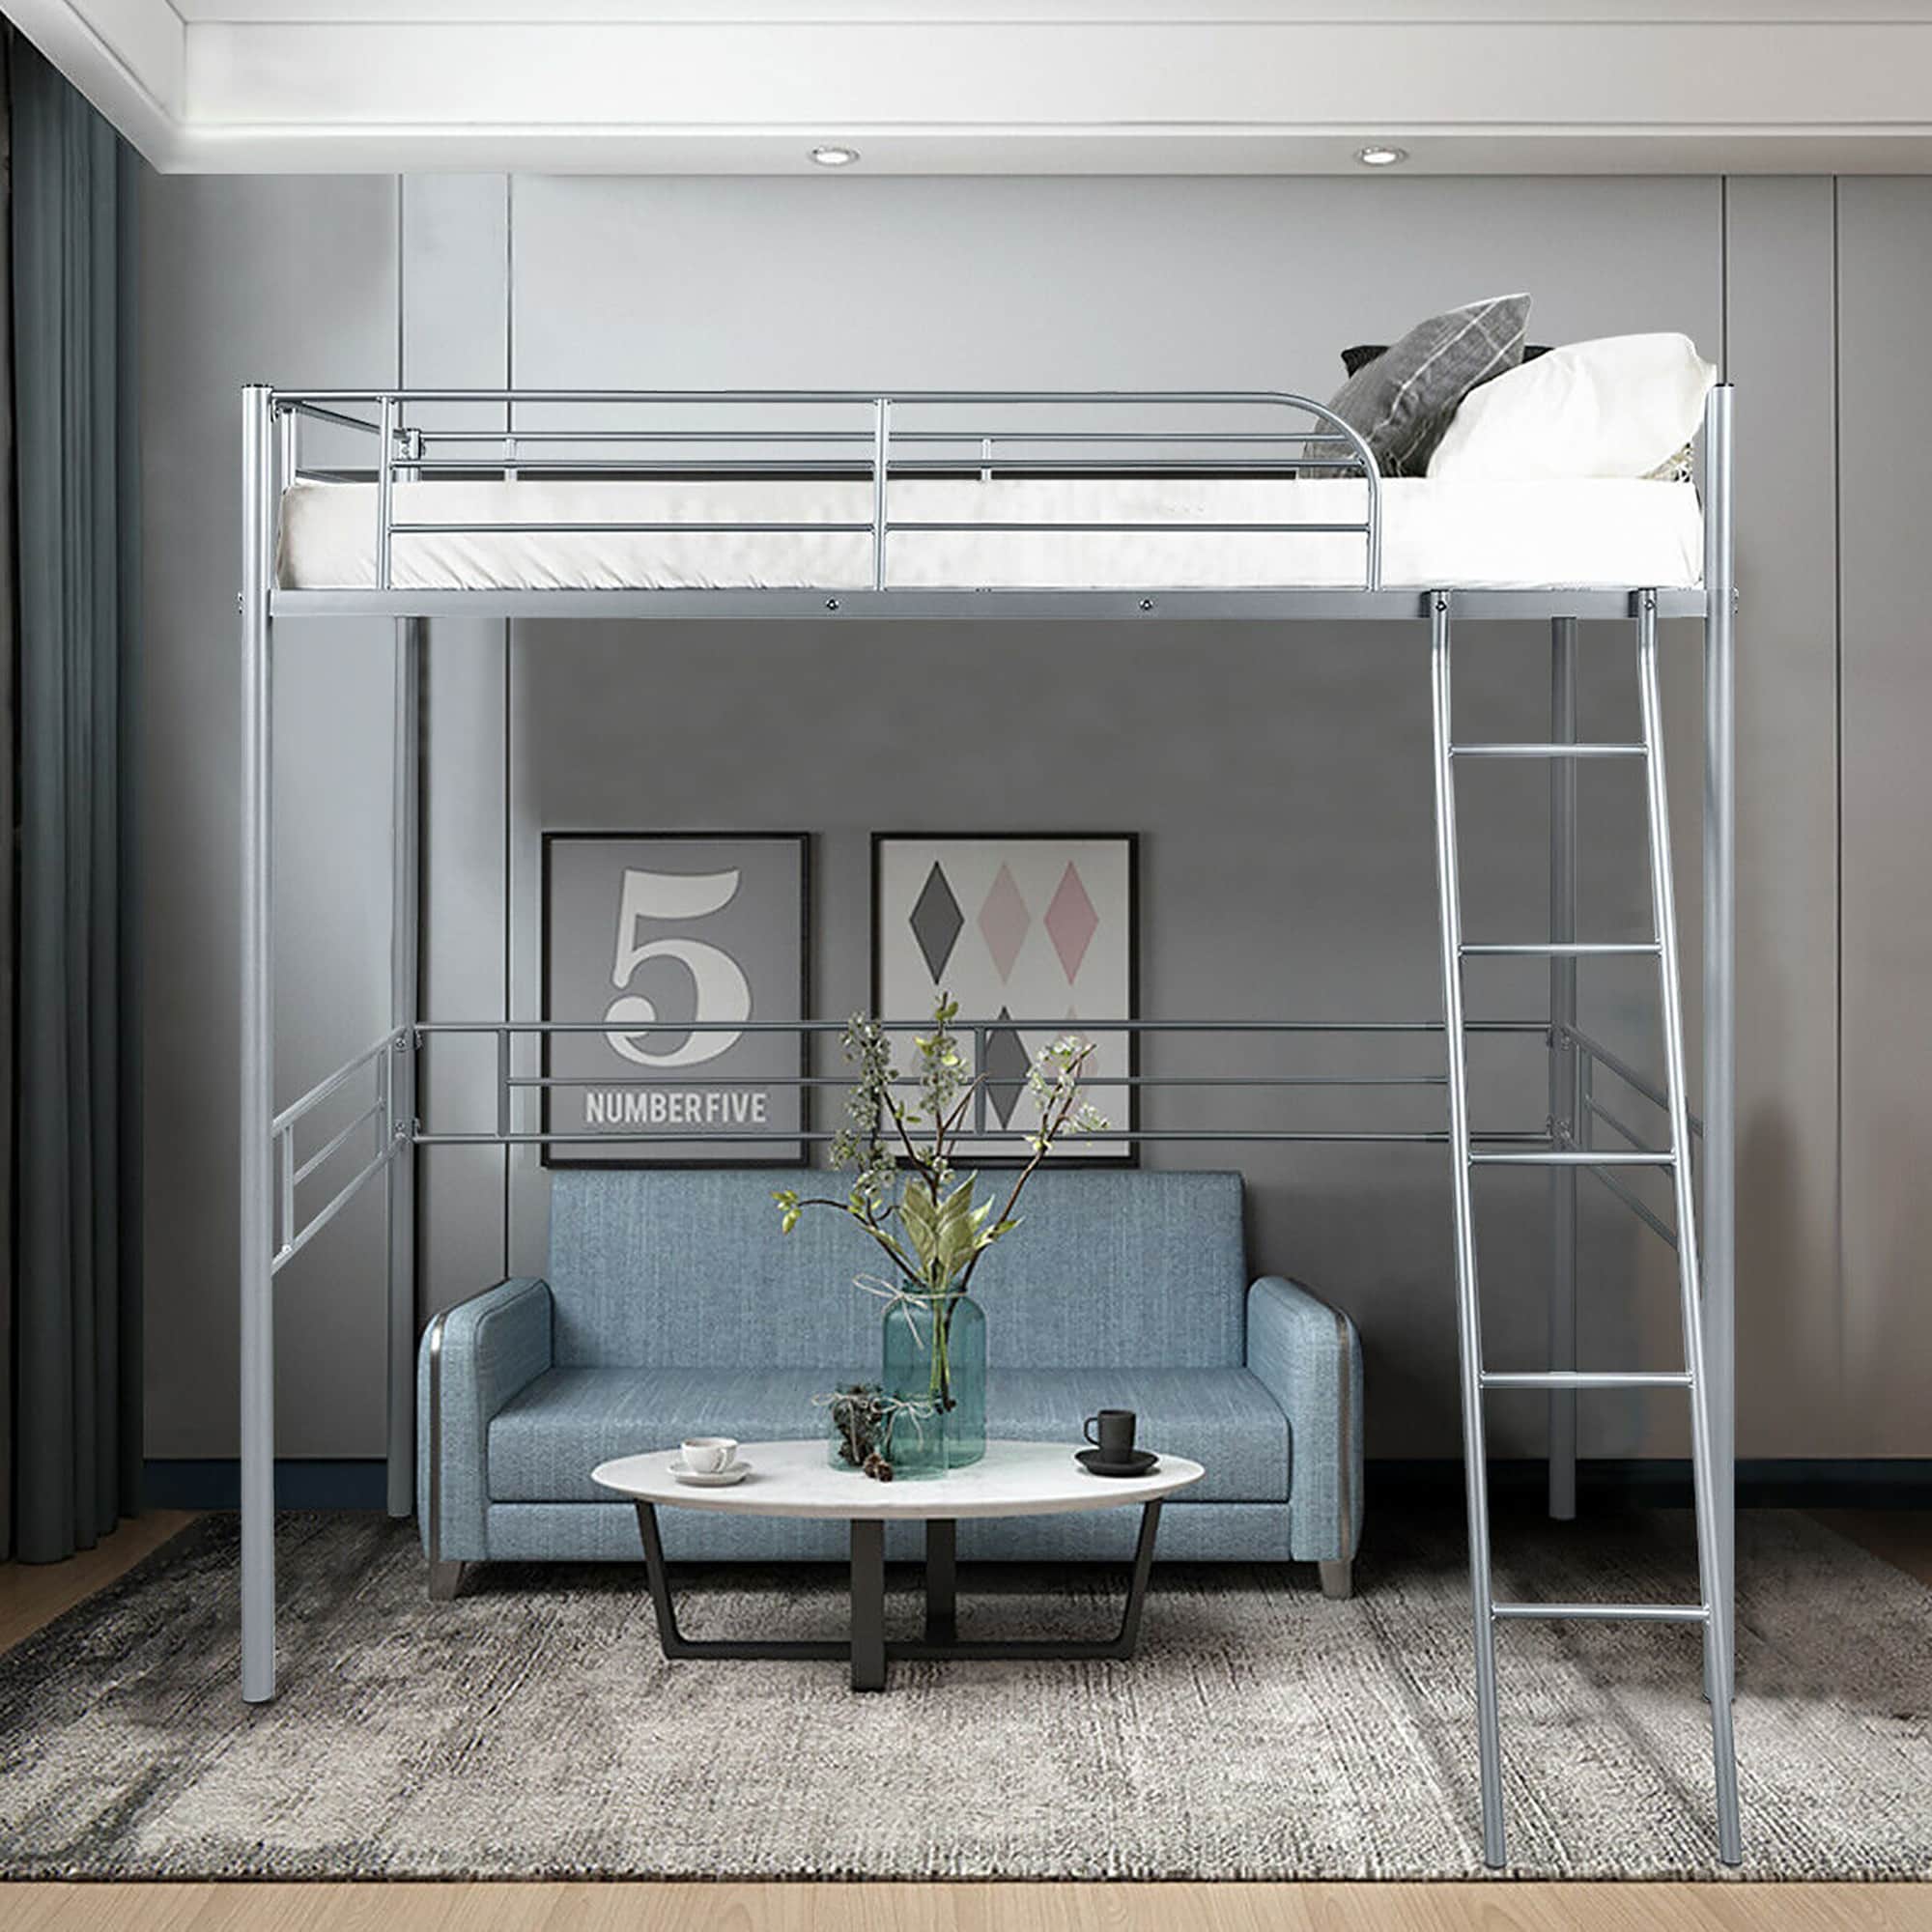 loft single bed frame